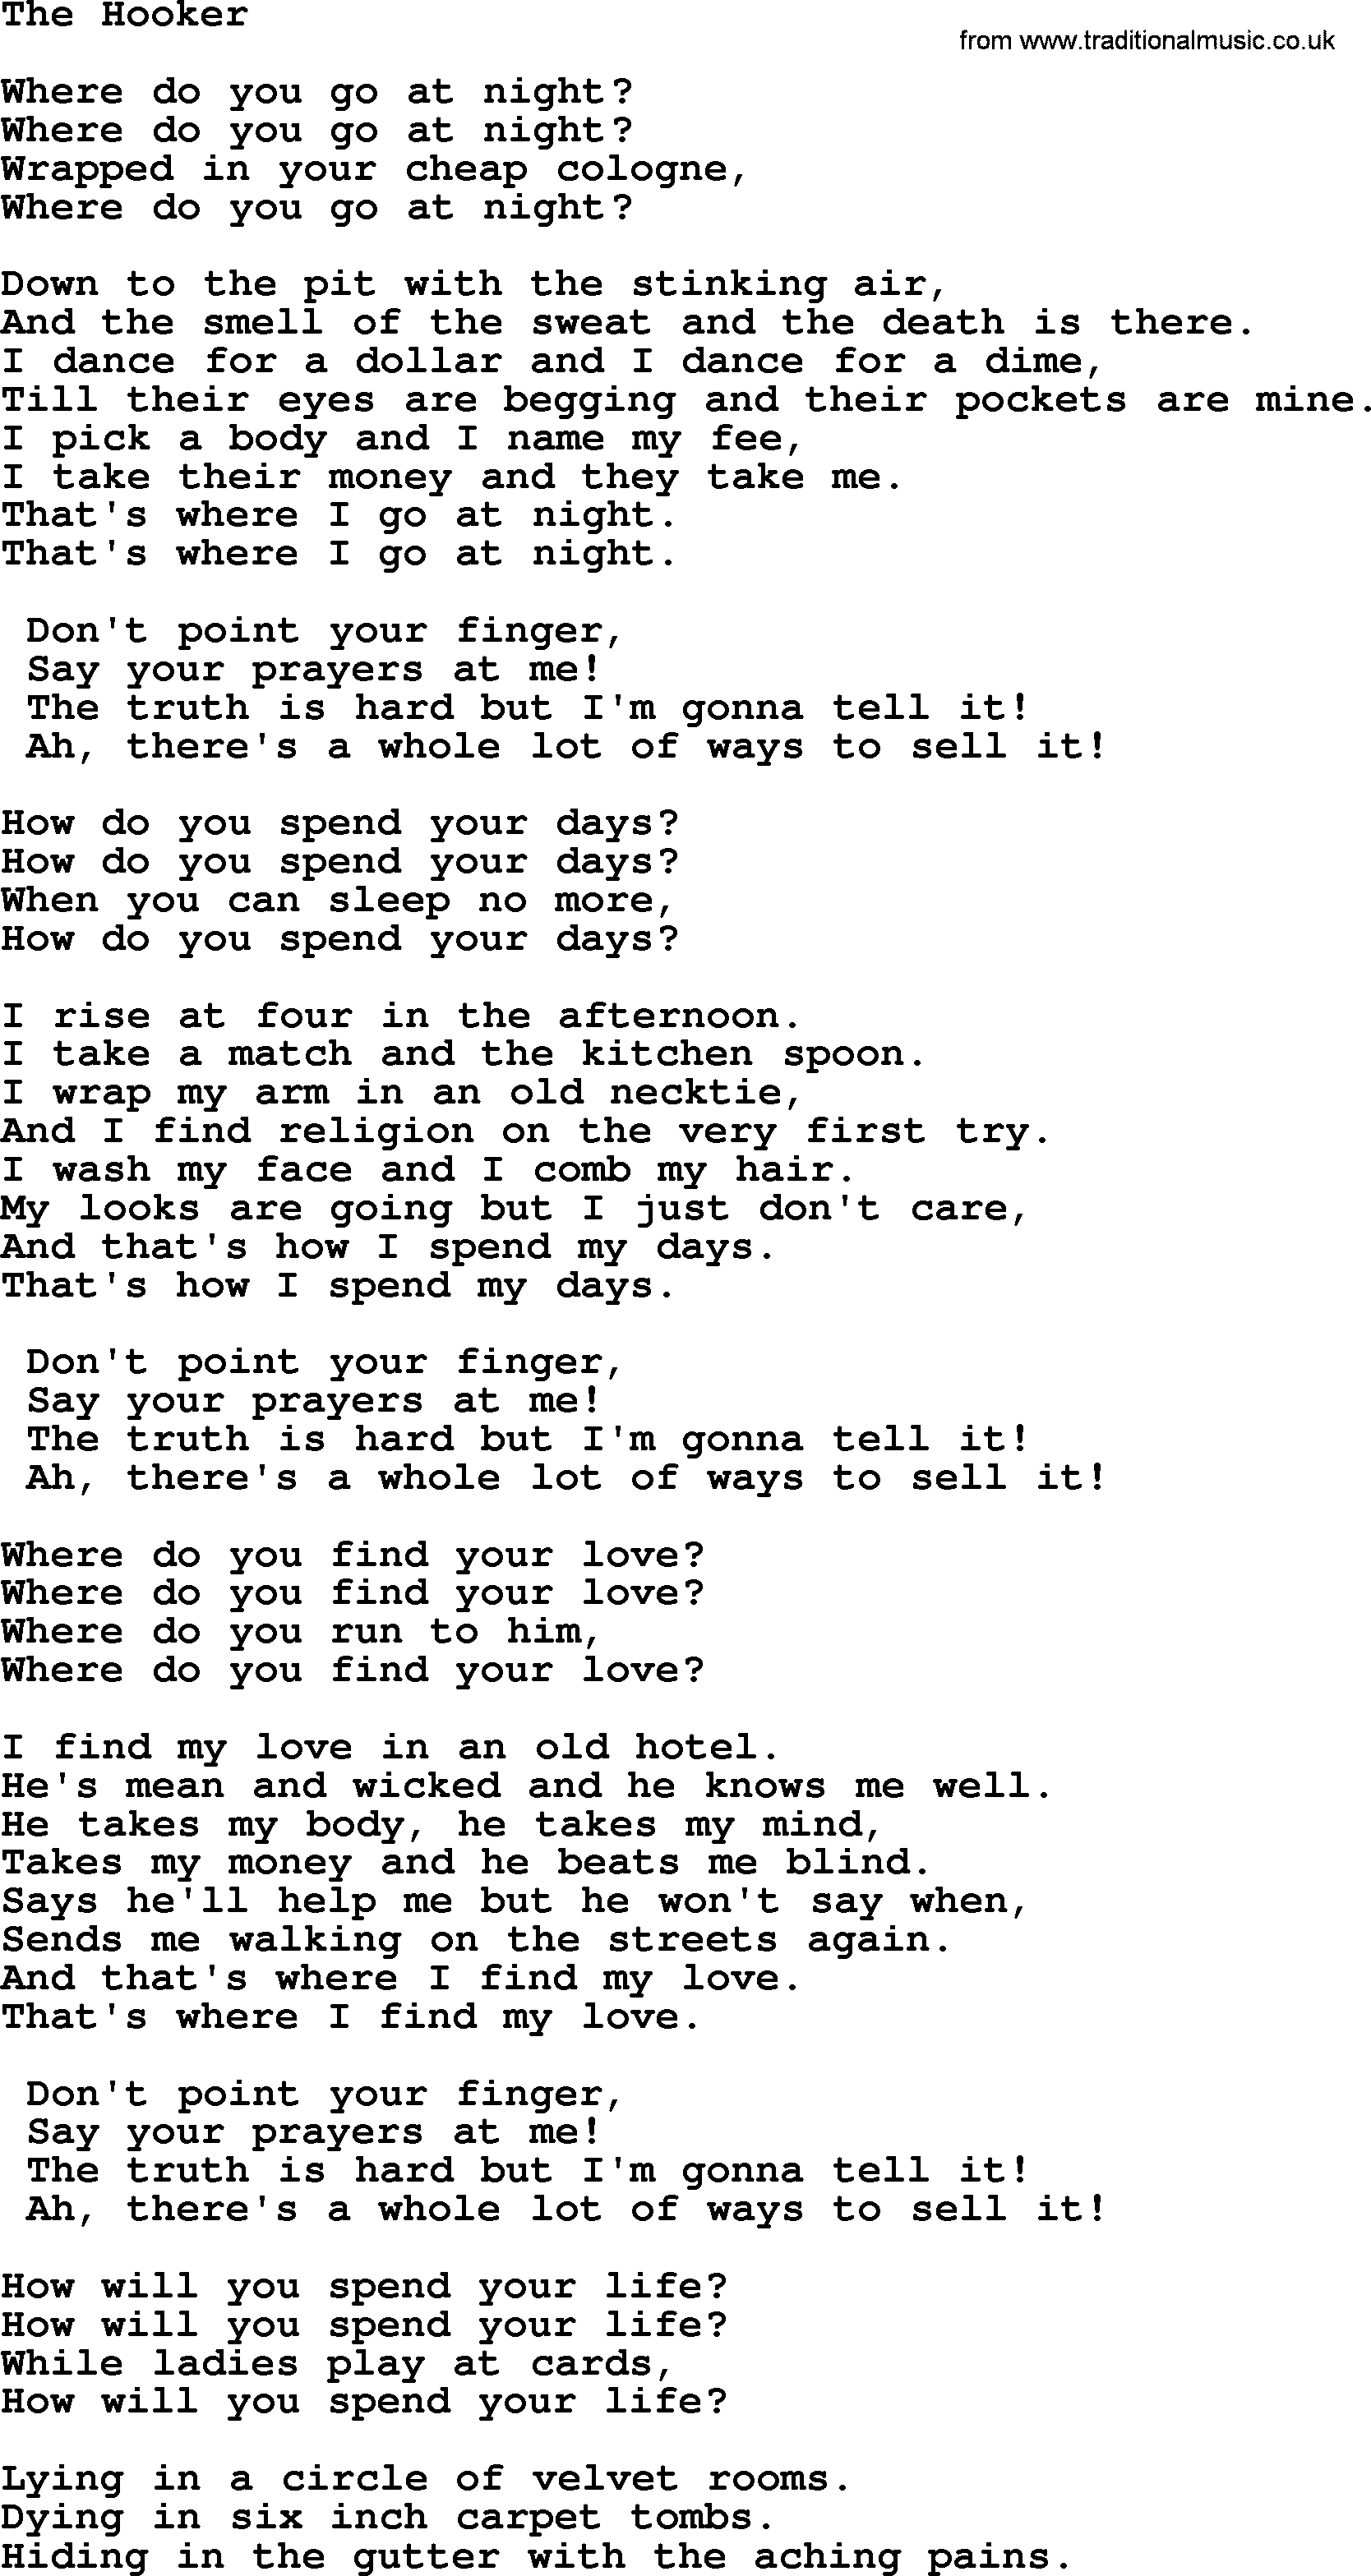 Tom Paxton song: The Hooker, lyrics